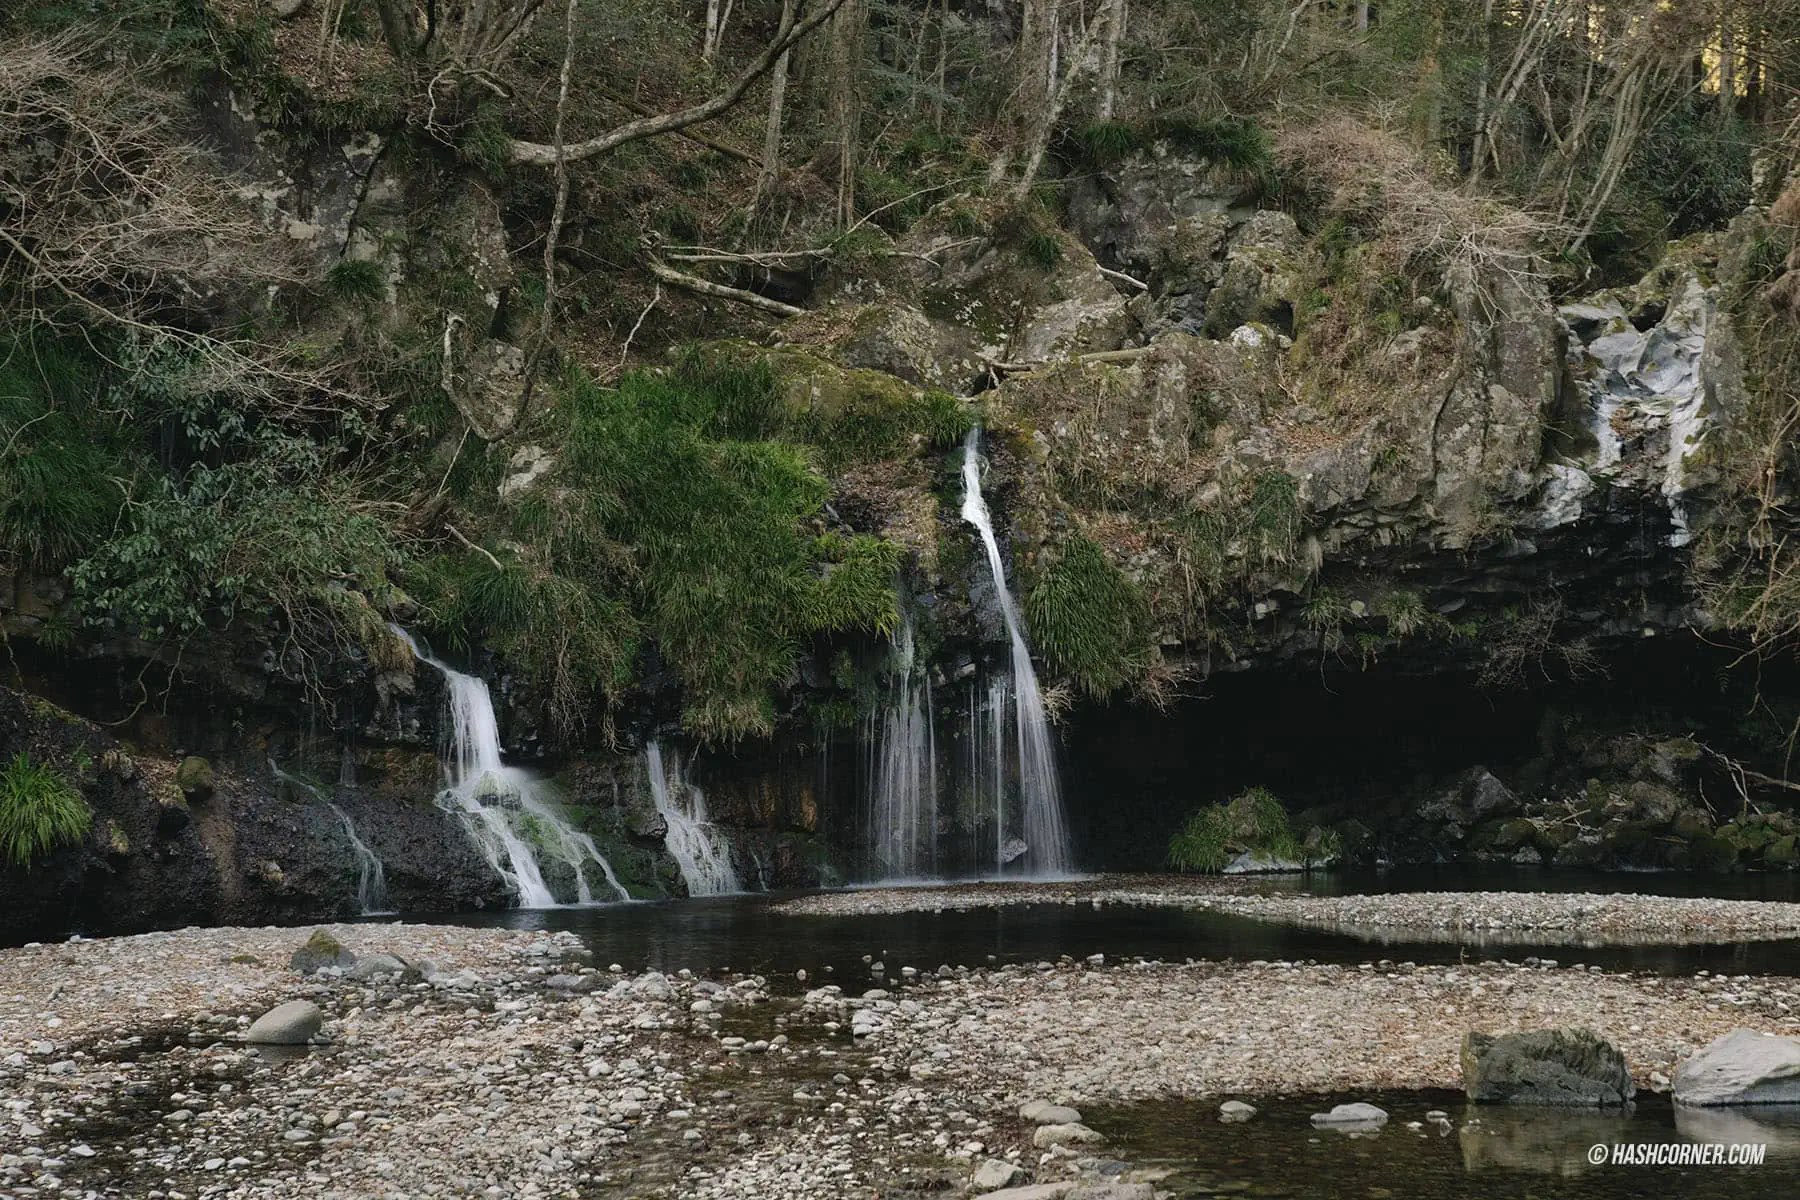 รีวิว น้ำตกจินบะ (Jinba Falls) x ชิซึโอกะ เที่ยวน้ำตกเล็กๆ กลางธรรมชาติ